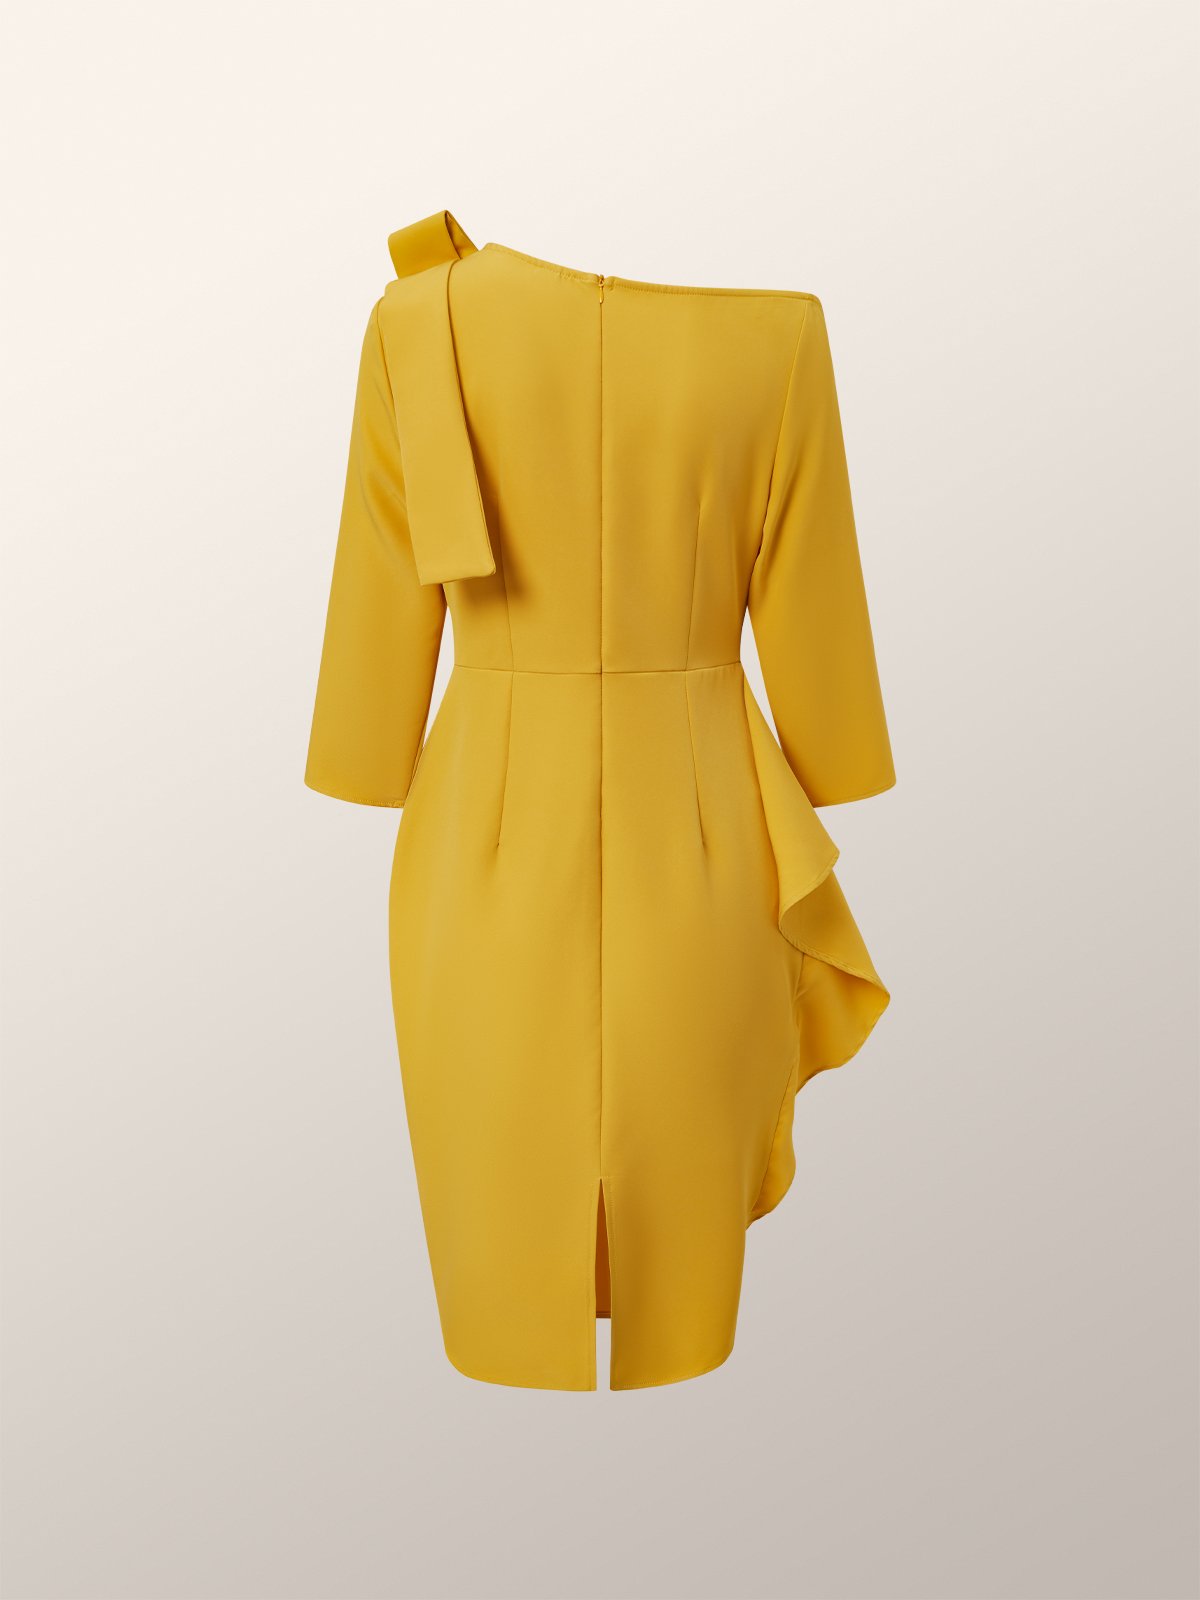 Robes Femmes Plain Printemps Élégant Polyester Taille Haute 1 * robe Asymétrique Manches 3/4 Régulier